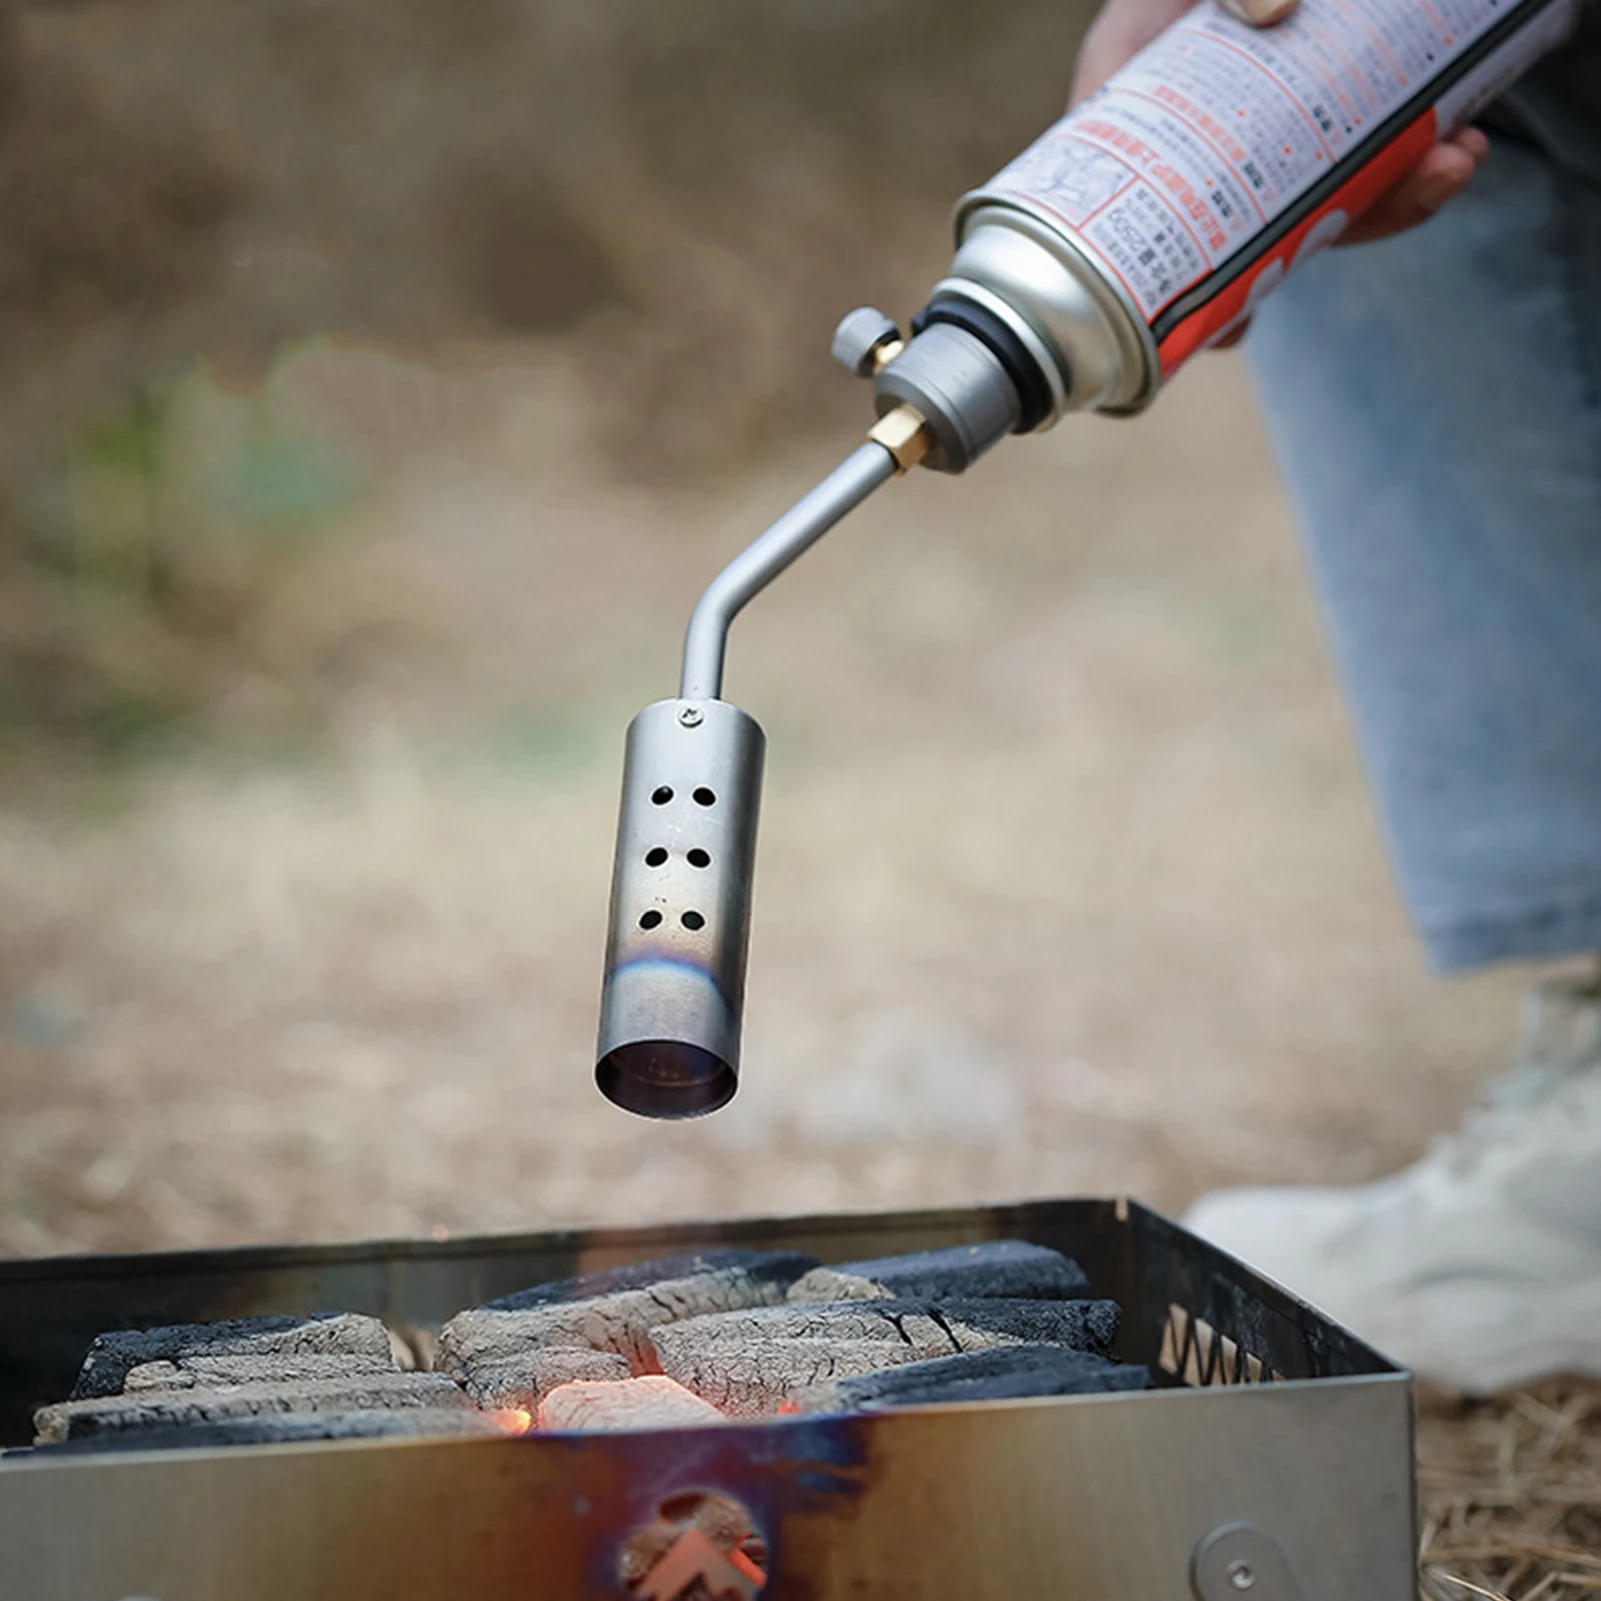 Пропановая горелка - огнемет для гриля и приготовления пищи Профессиональная горелка-гриль, зажигалка, кухонный инструмент, закваска для угля на открытом воздухе Изображение 5